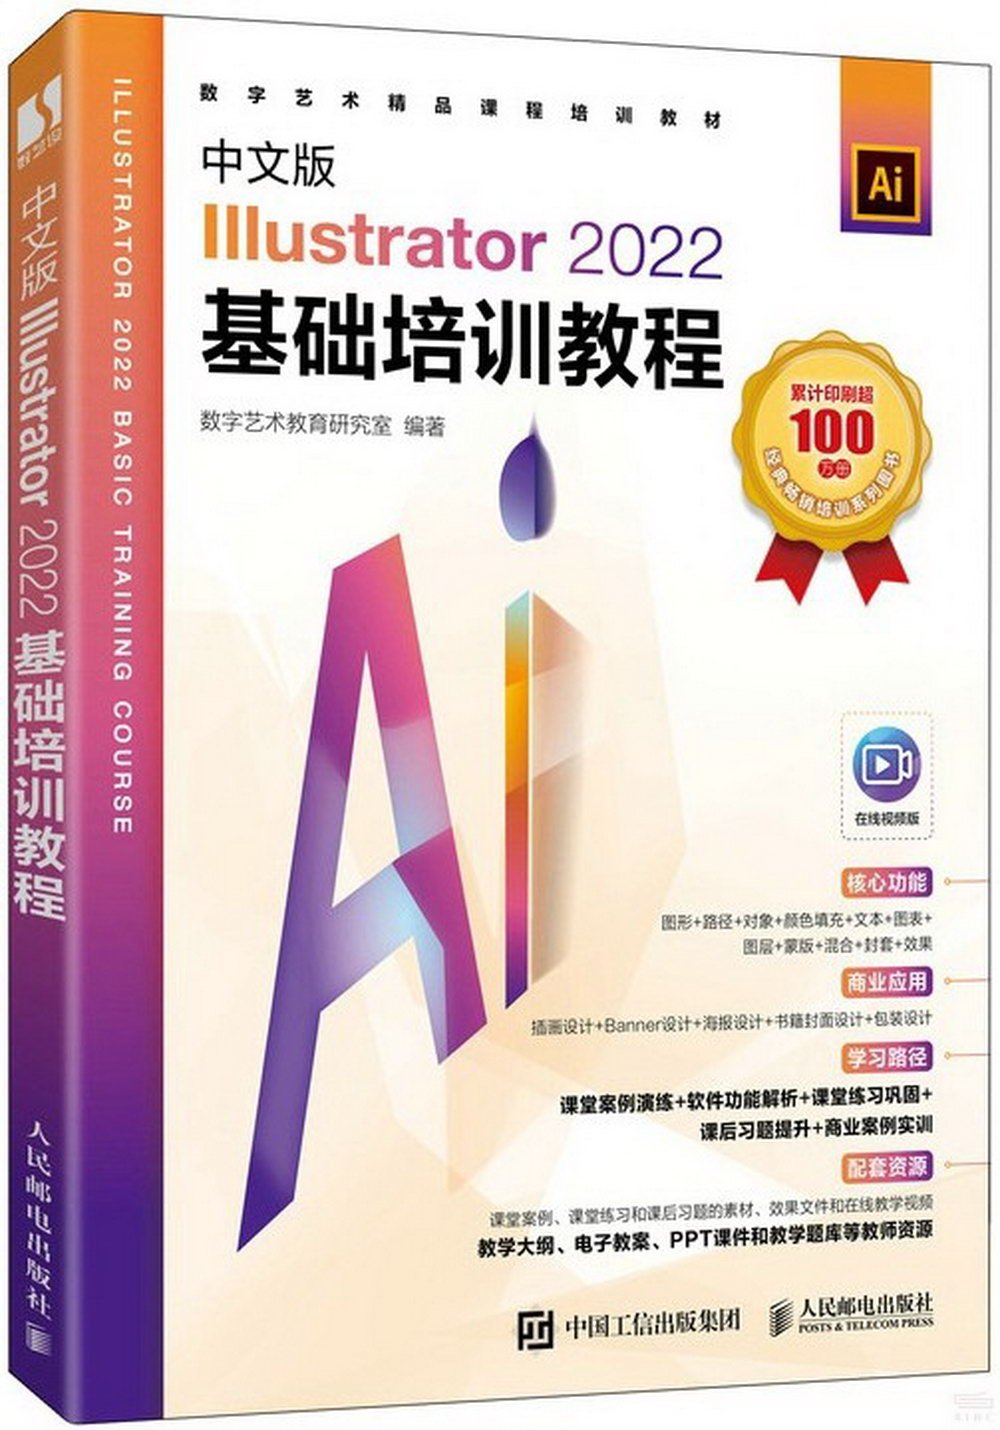 中文版Illustrator 2022基礎培訓教程